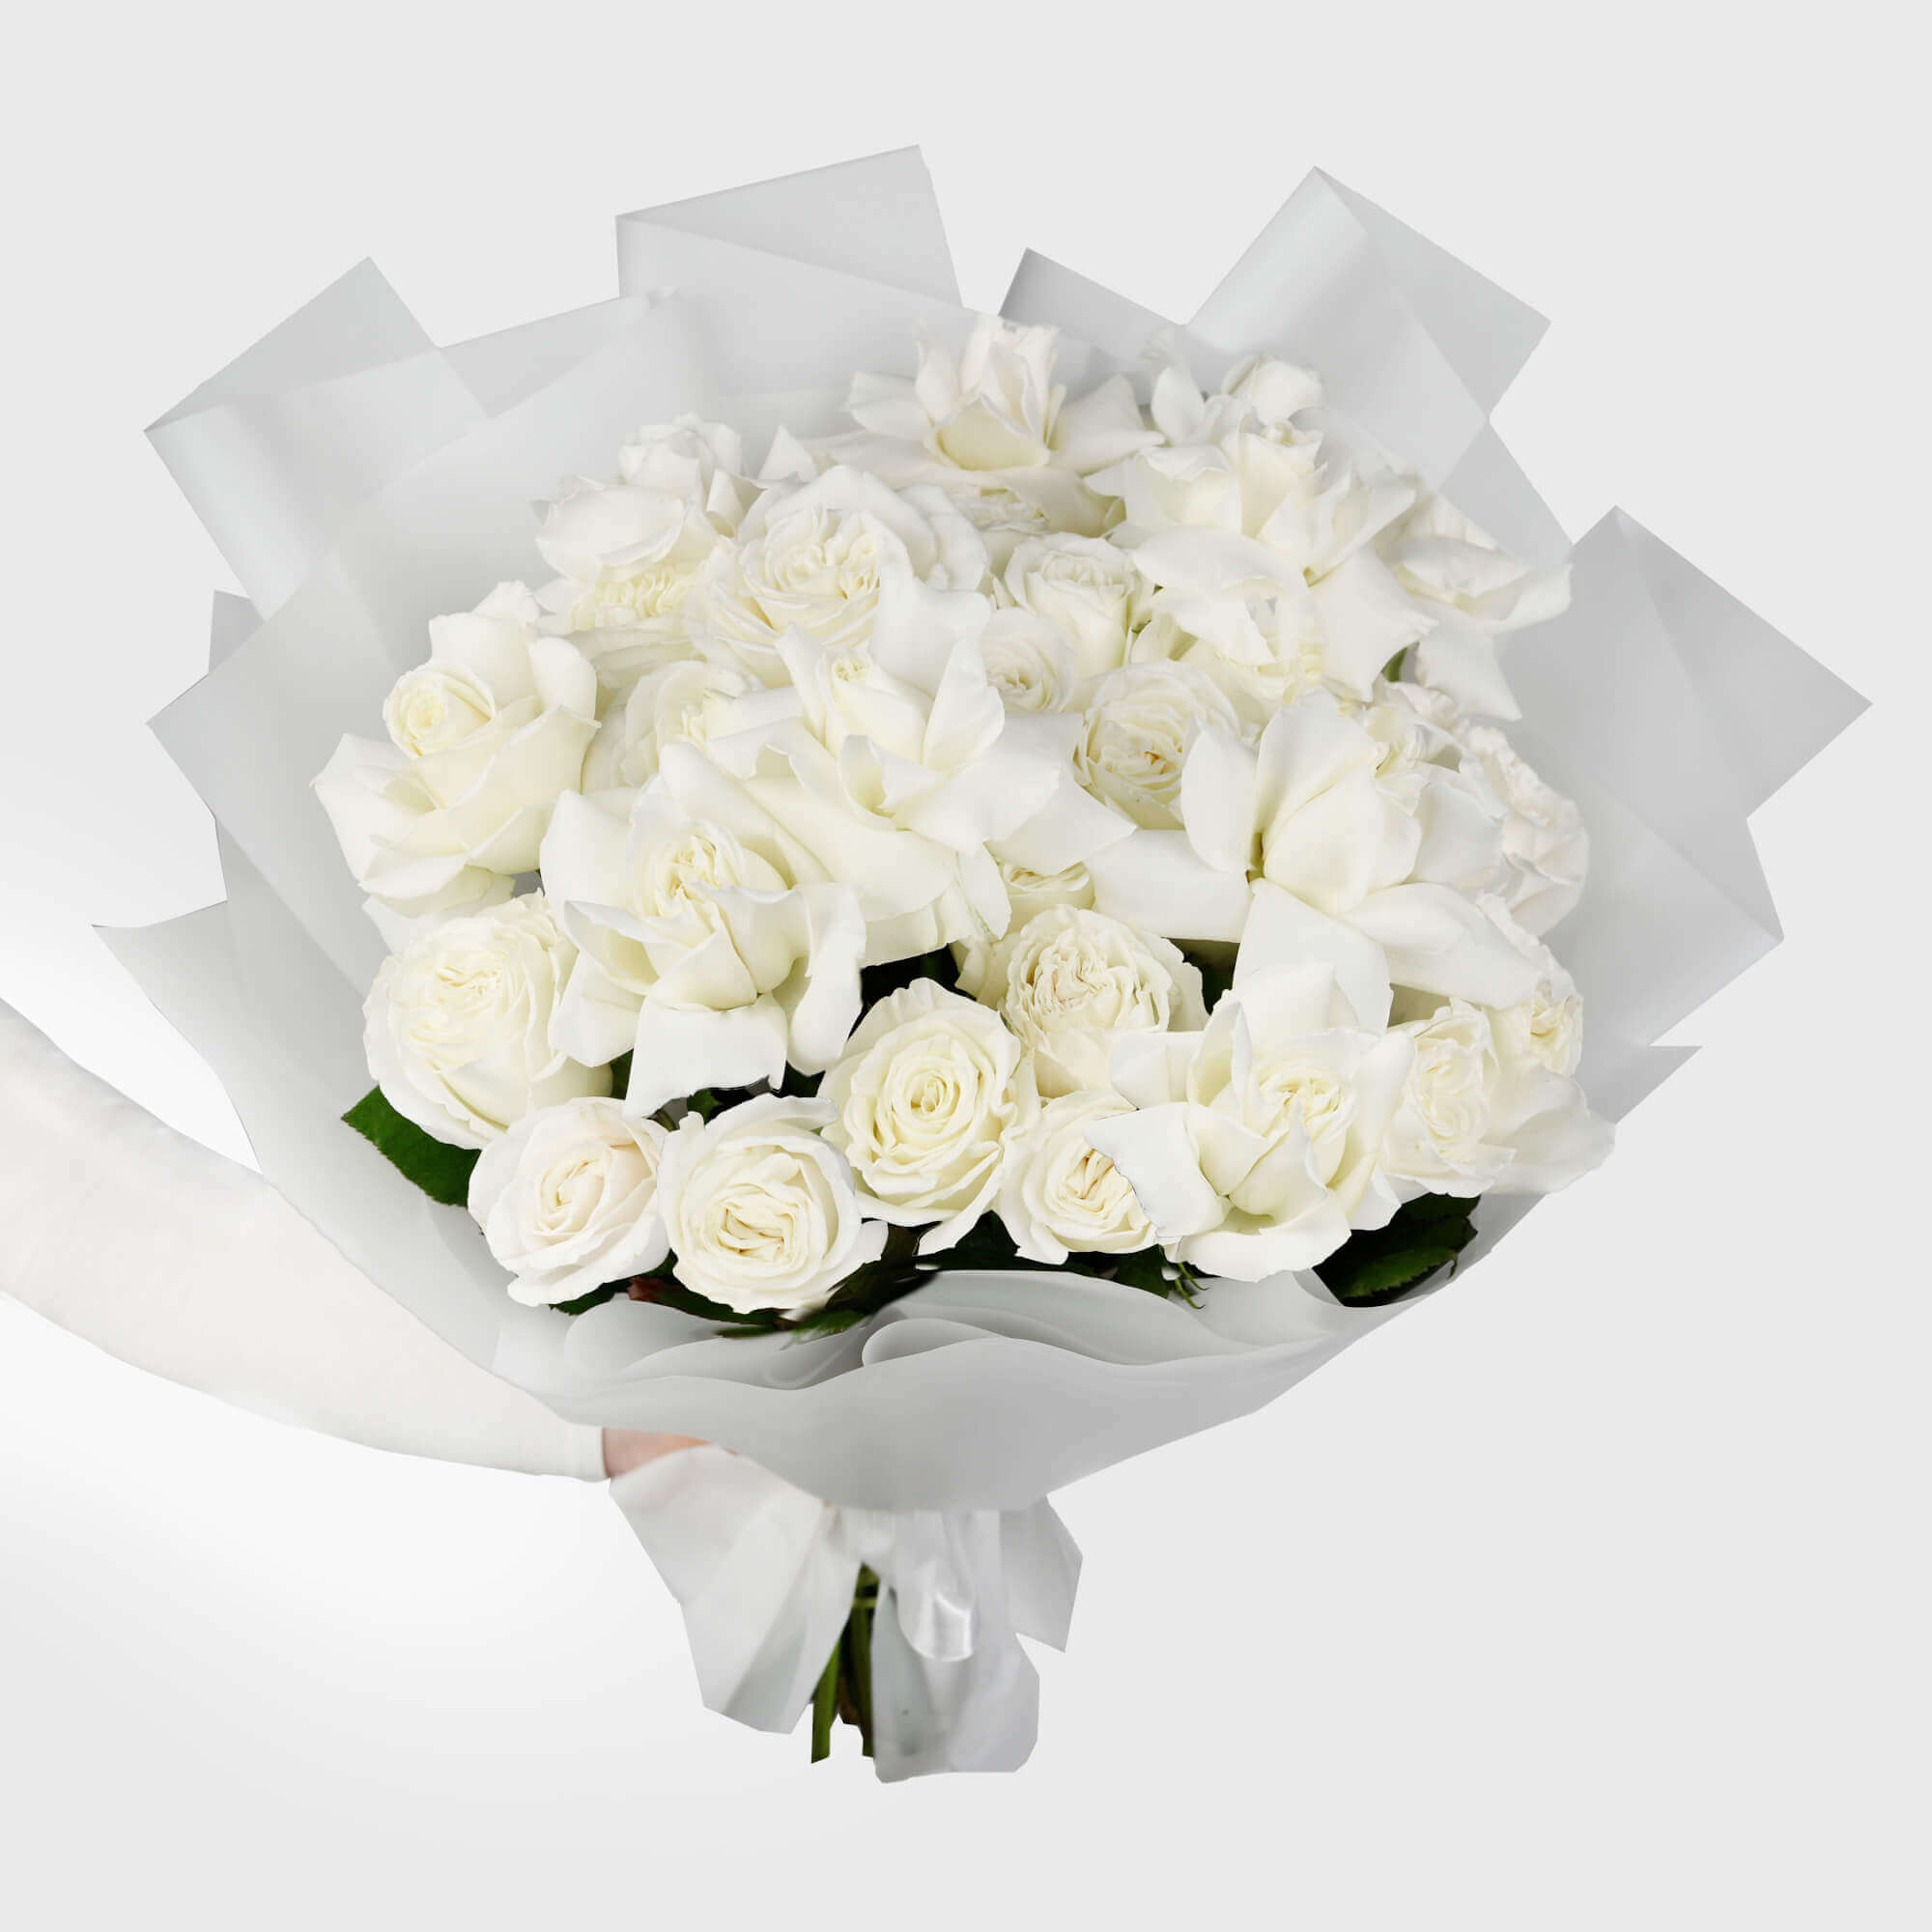 Buchet mixt cu 31 trandafiri albi, 1